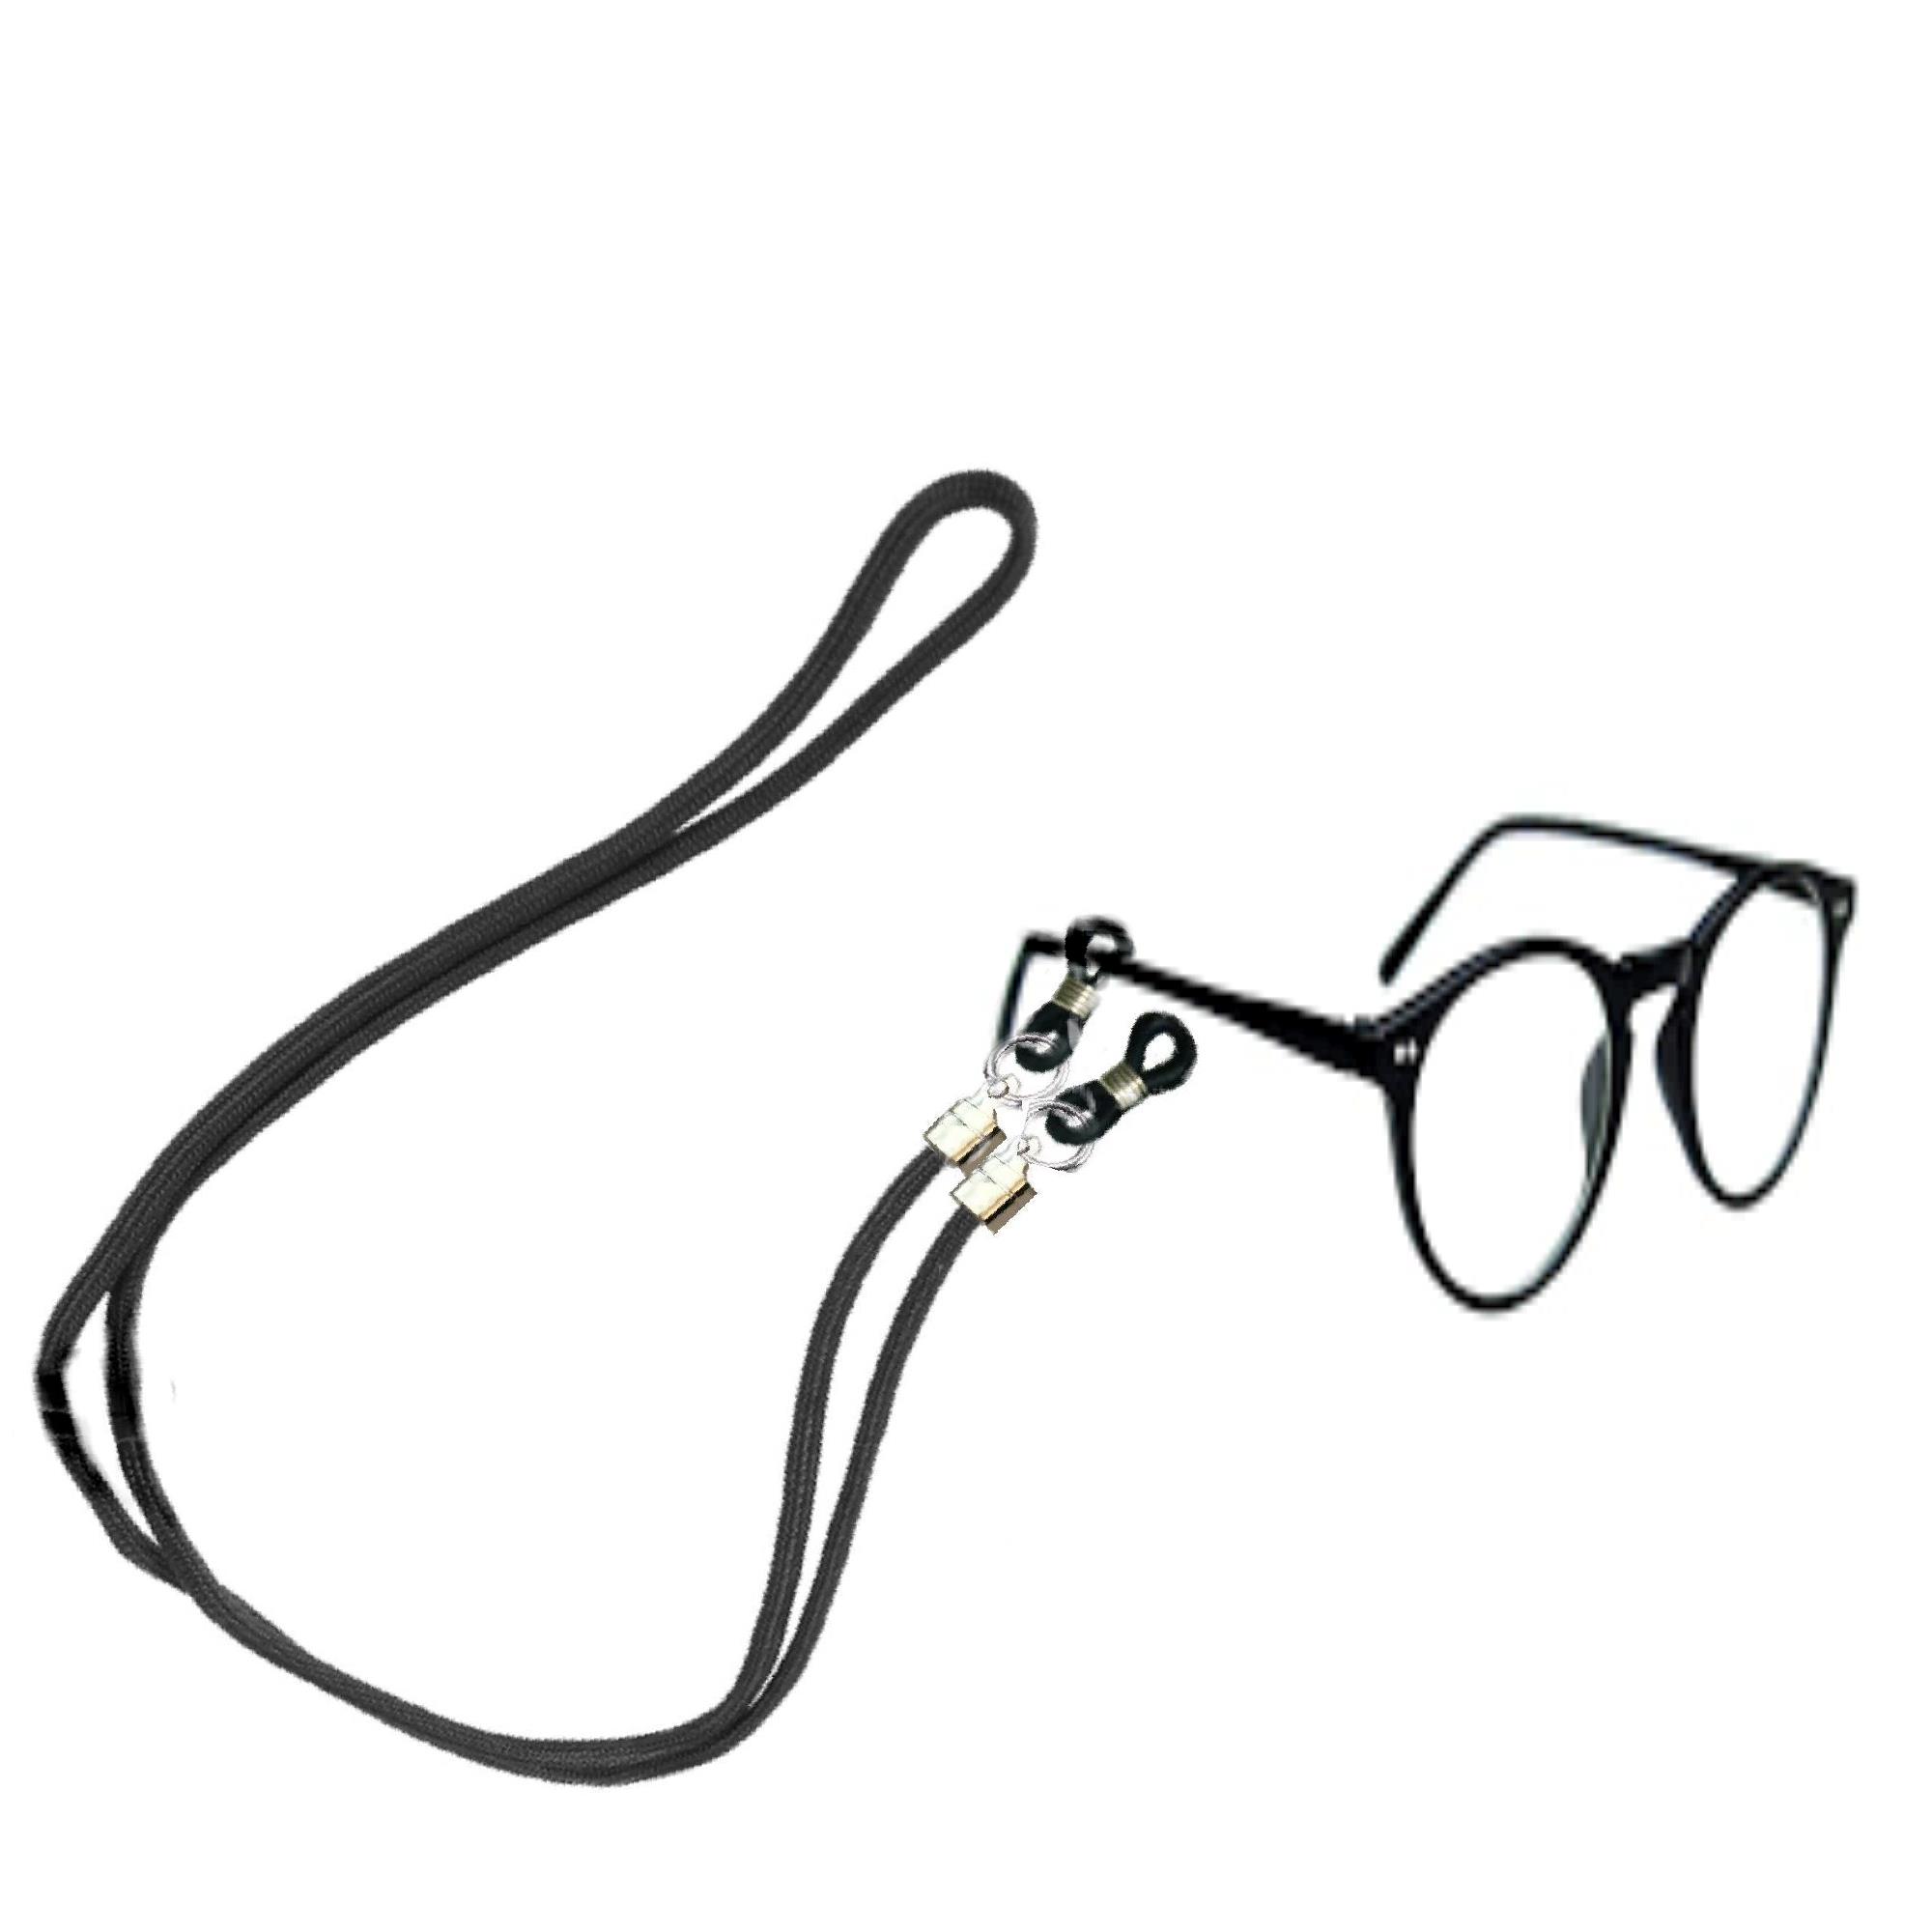 2x Laccio per occhiali universale da sole vista da lettura sport cordino 70 cm\